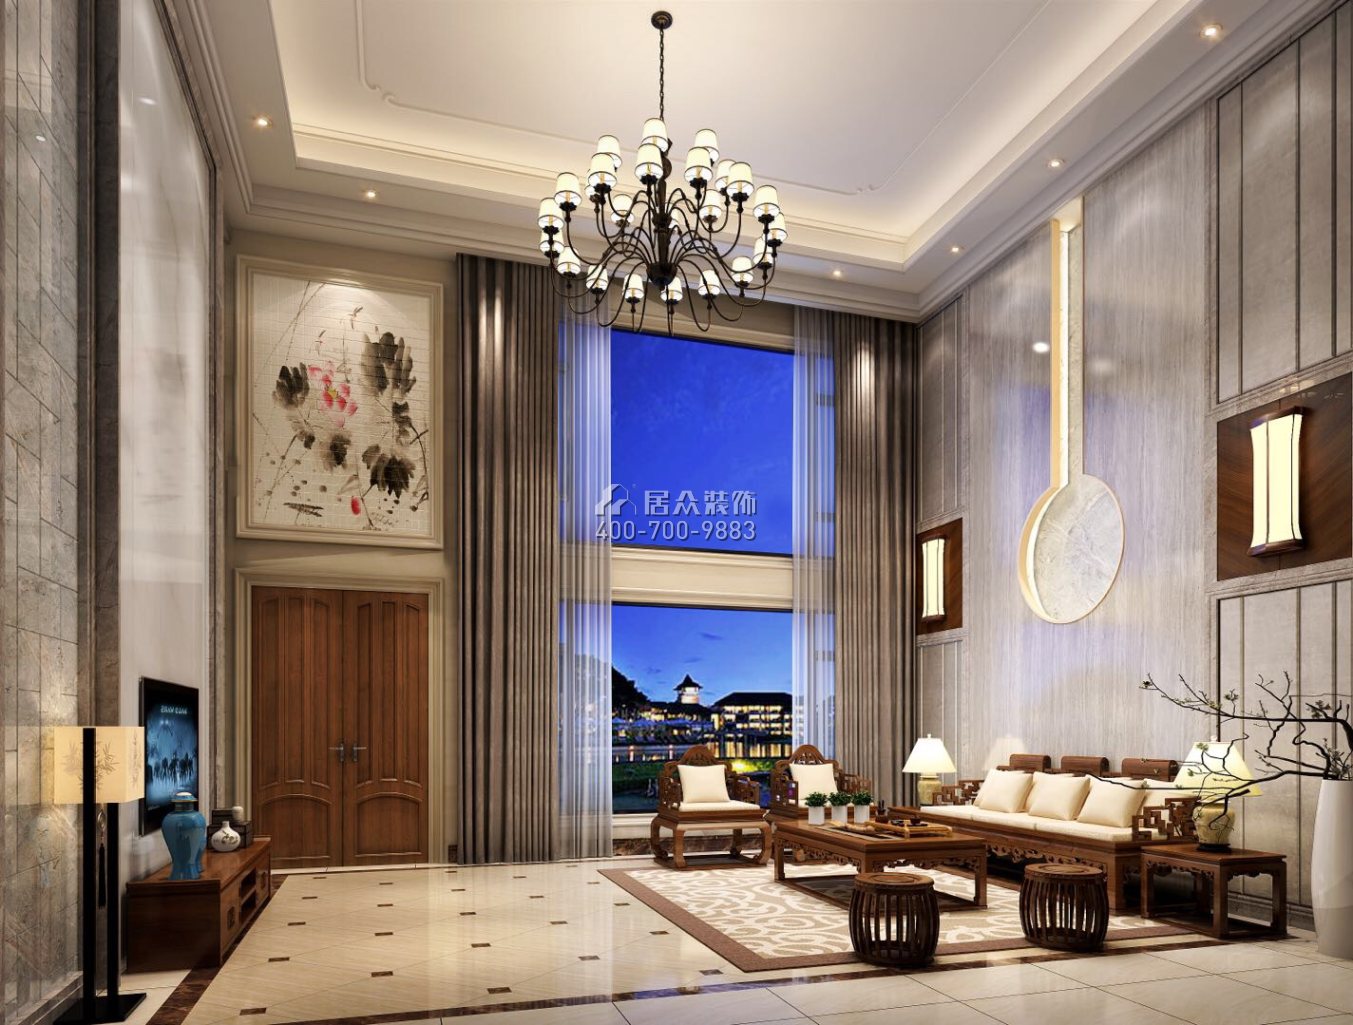 紫檀山500平方米中式风格别墅户型封面（中国）科技有限公司官网效果图